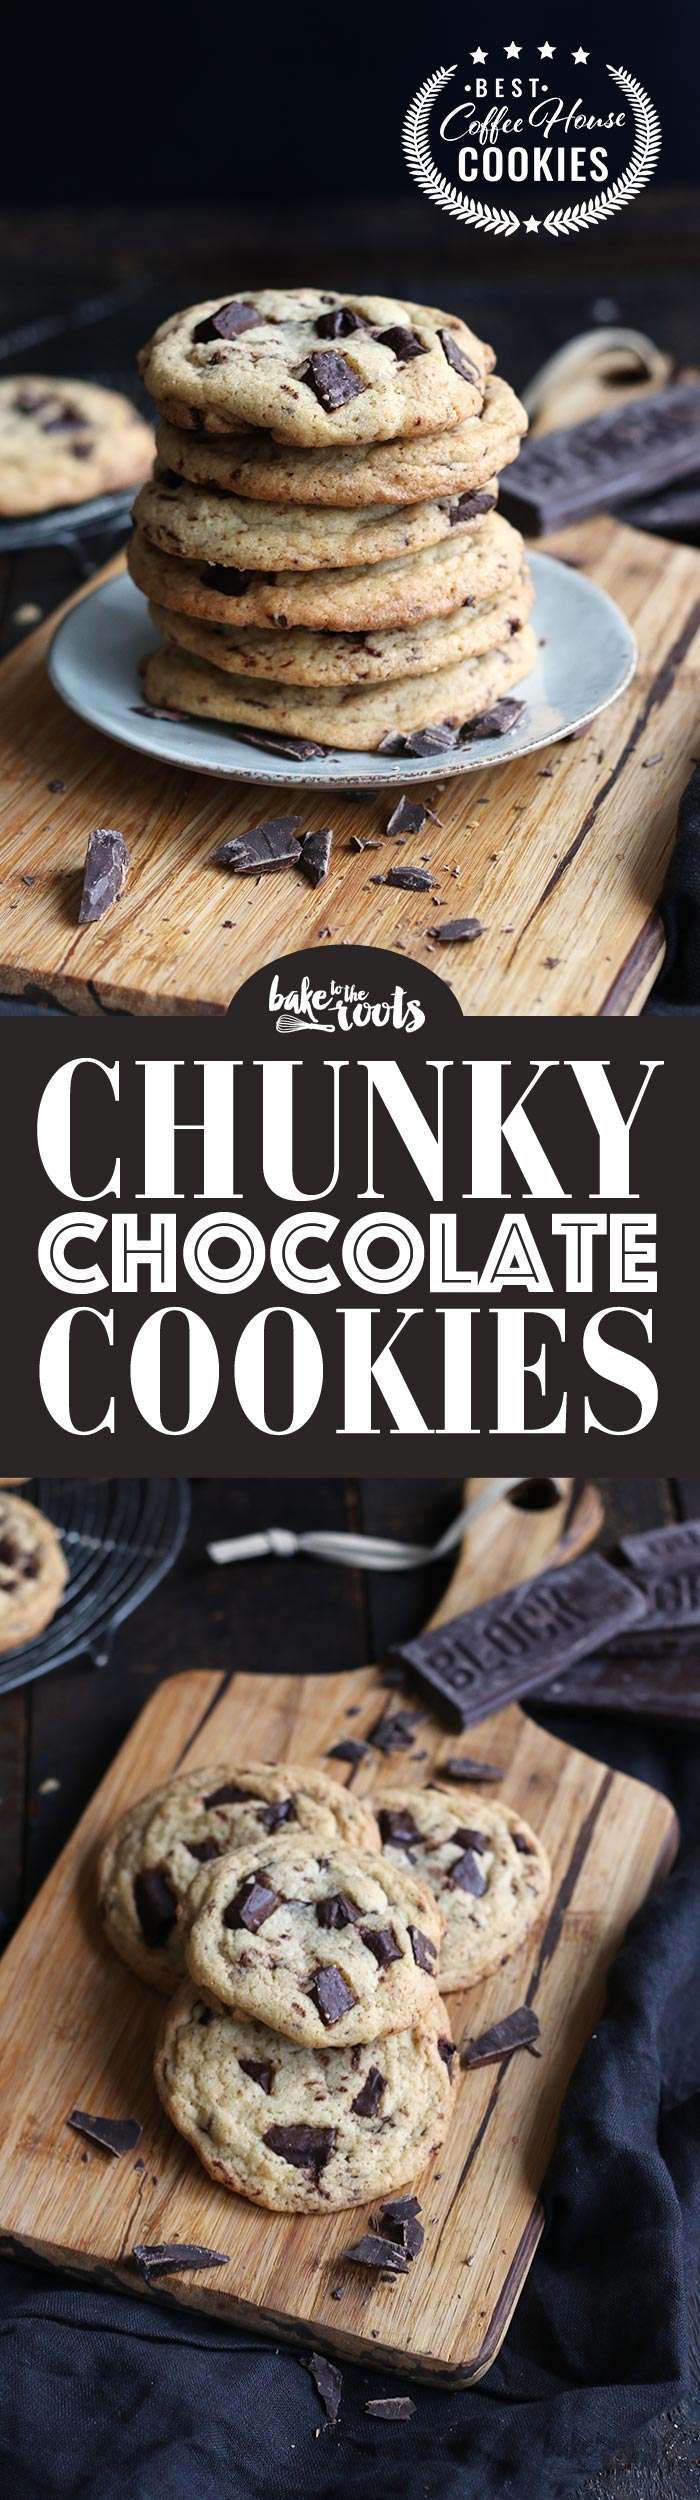 Leckere Chocolate Chip Cookies mit großen Schokoladenstücke | Bake to the roots